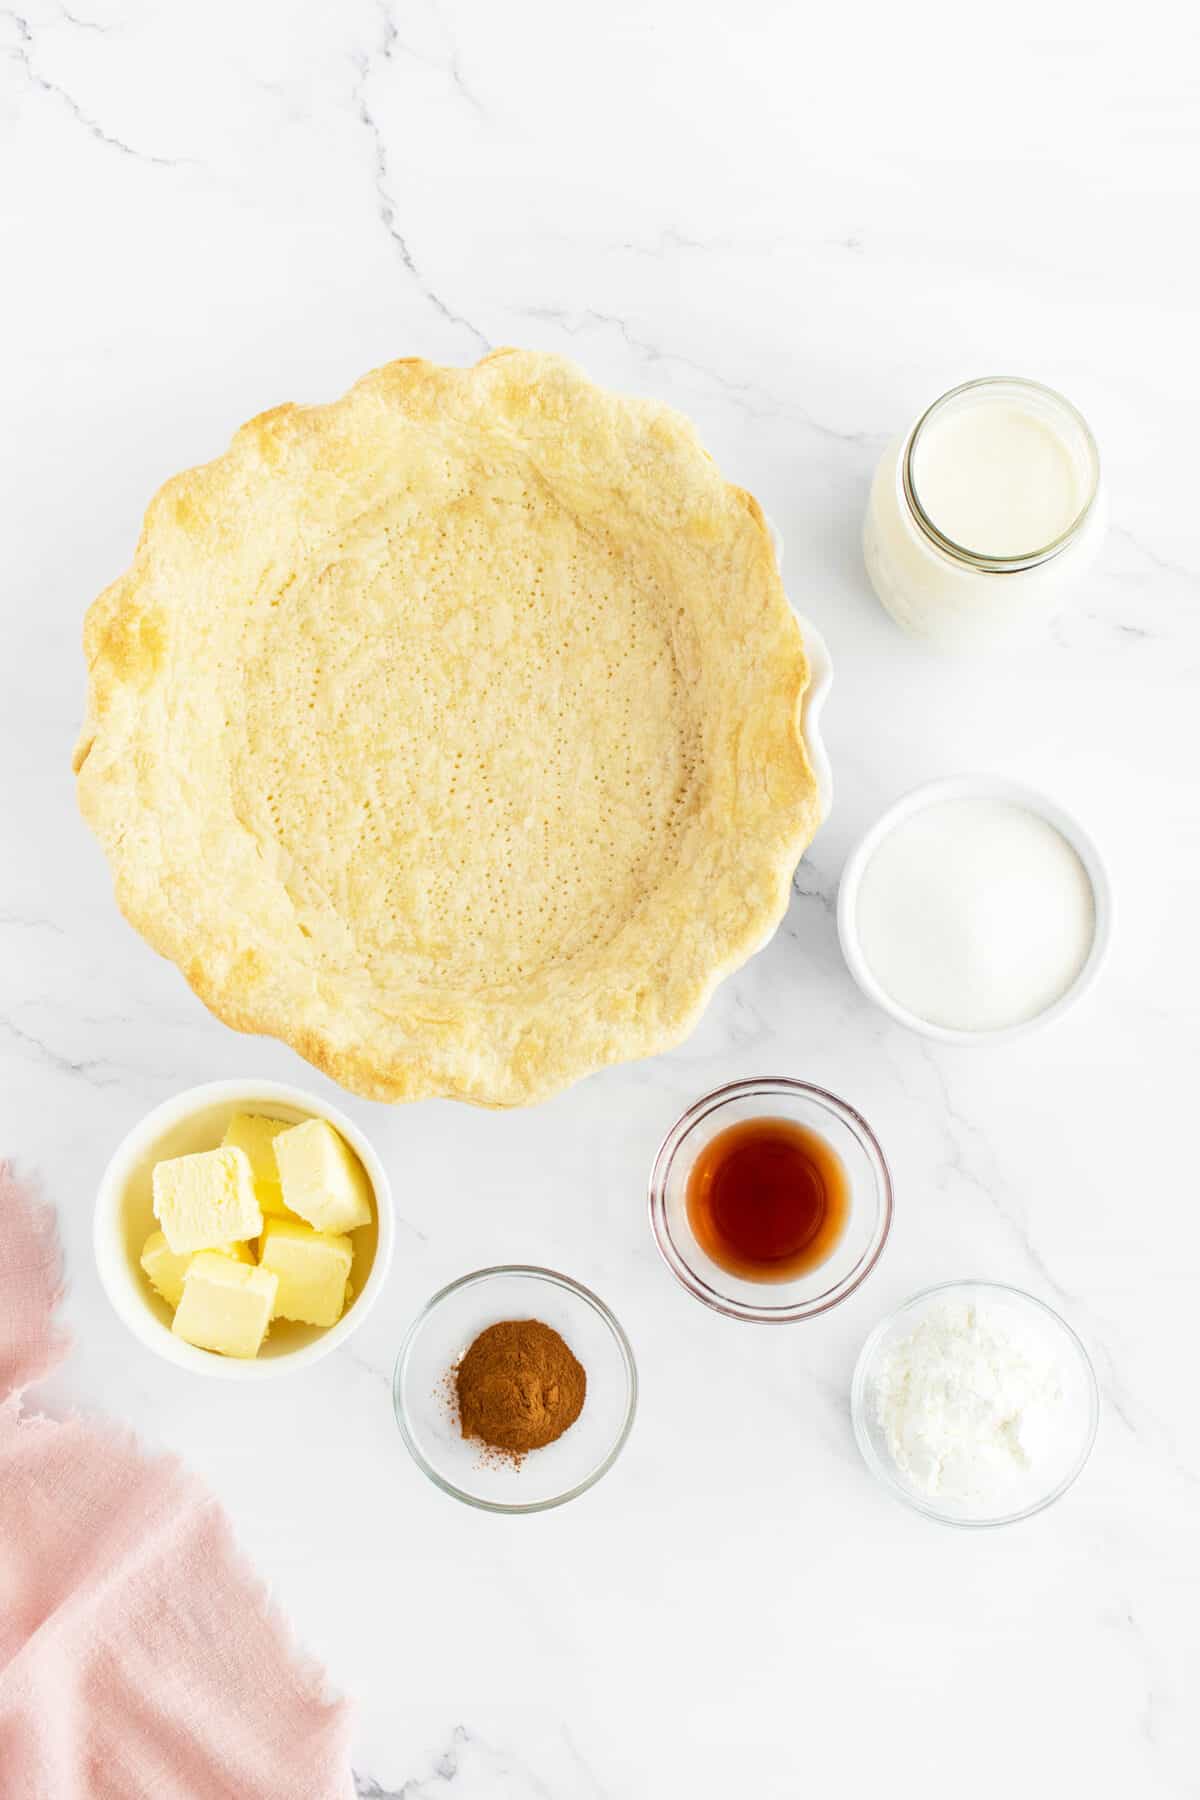 Sugar cream pie ingredients